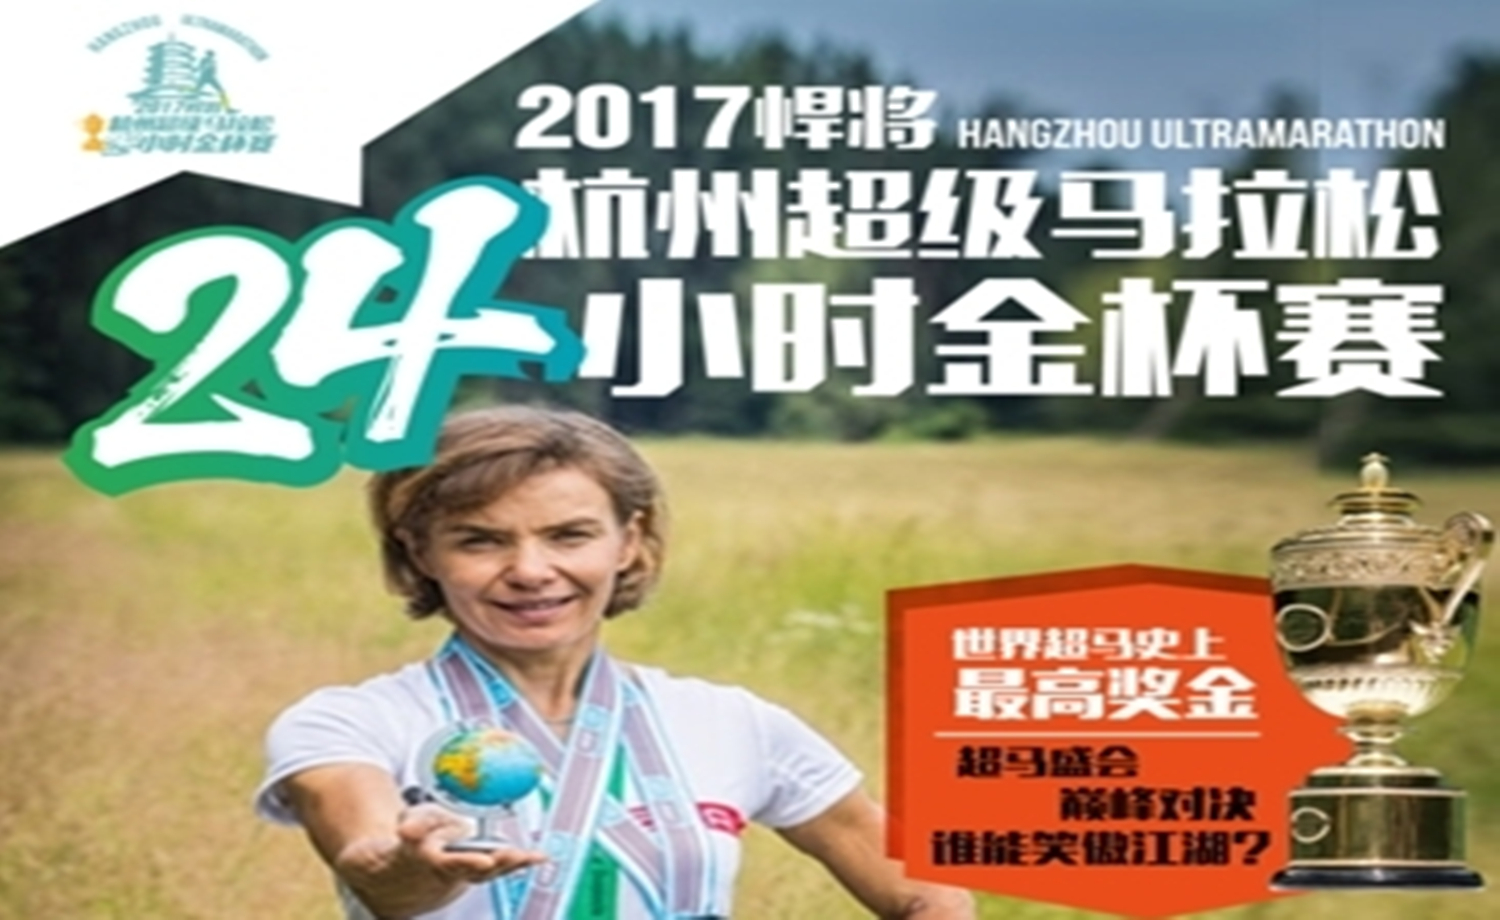 2017悍将杭州超级马拉松24小时金杯赛